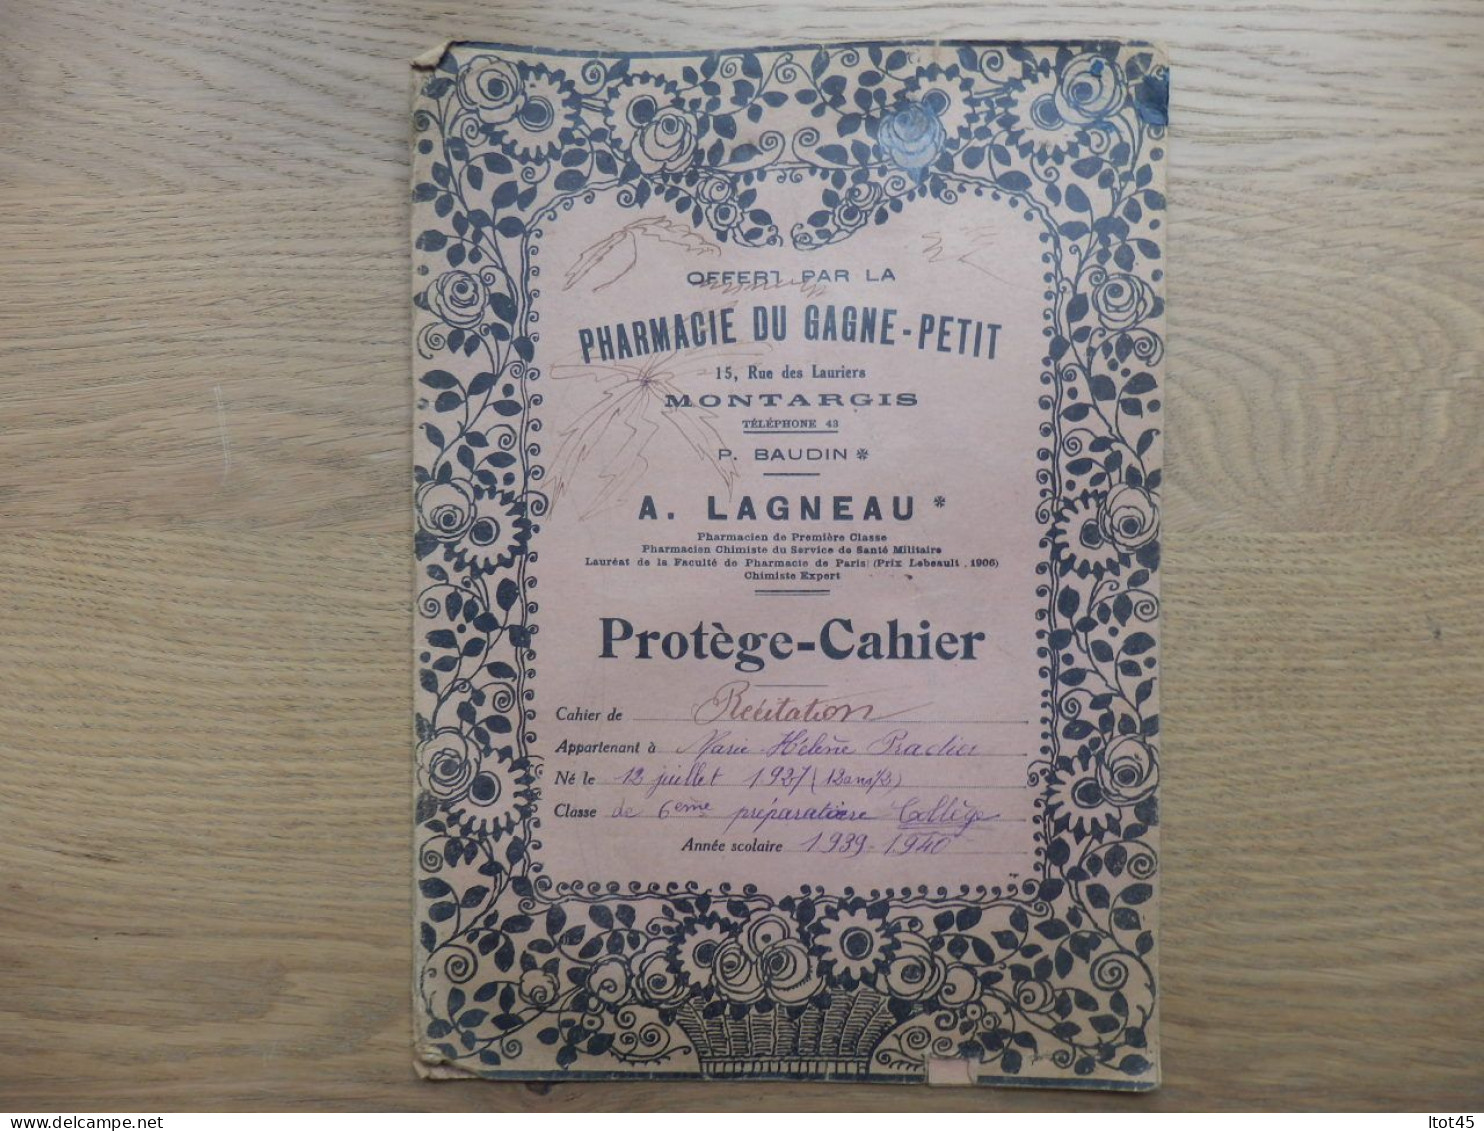 PROTEGE-CAHIER PHARMACIE DU GAGNE-PETIT A. LAGNEAU MONTARGIS LOIRET - Book Covers